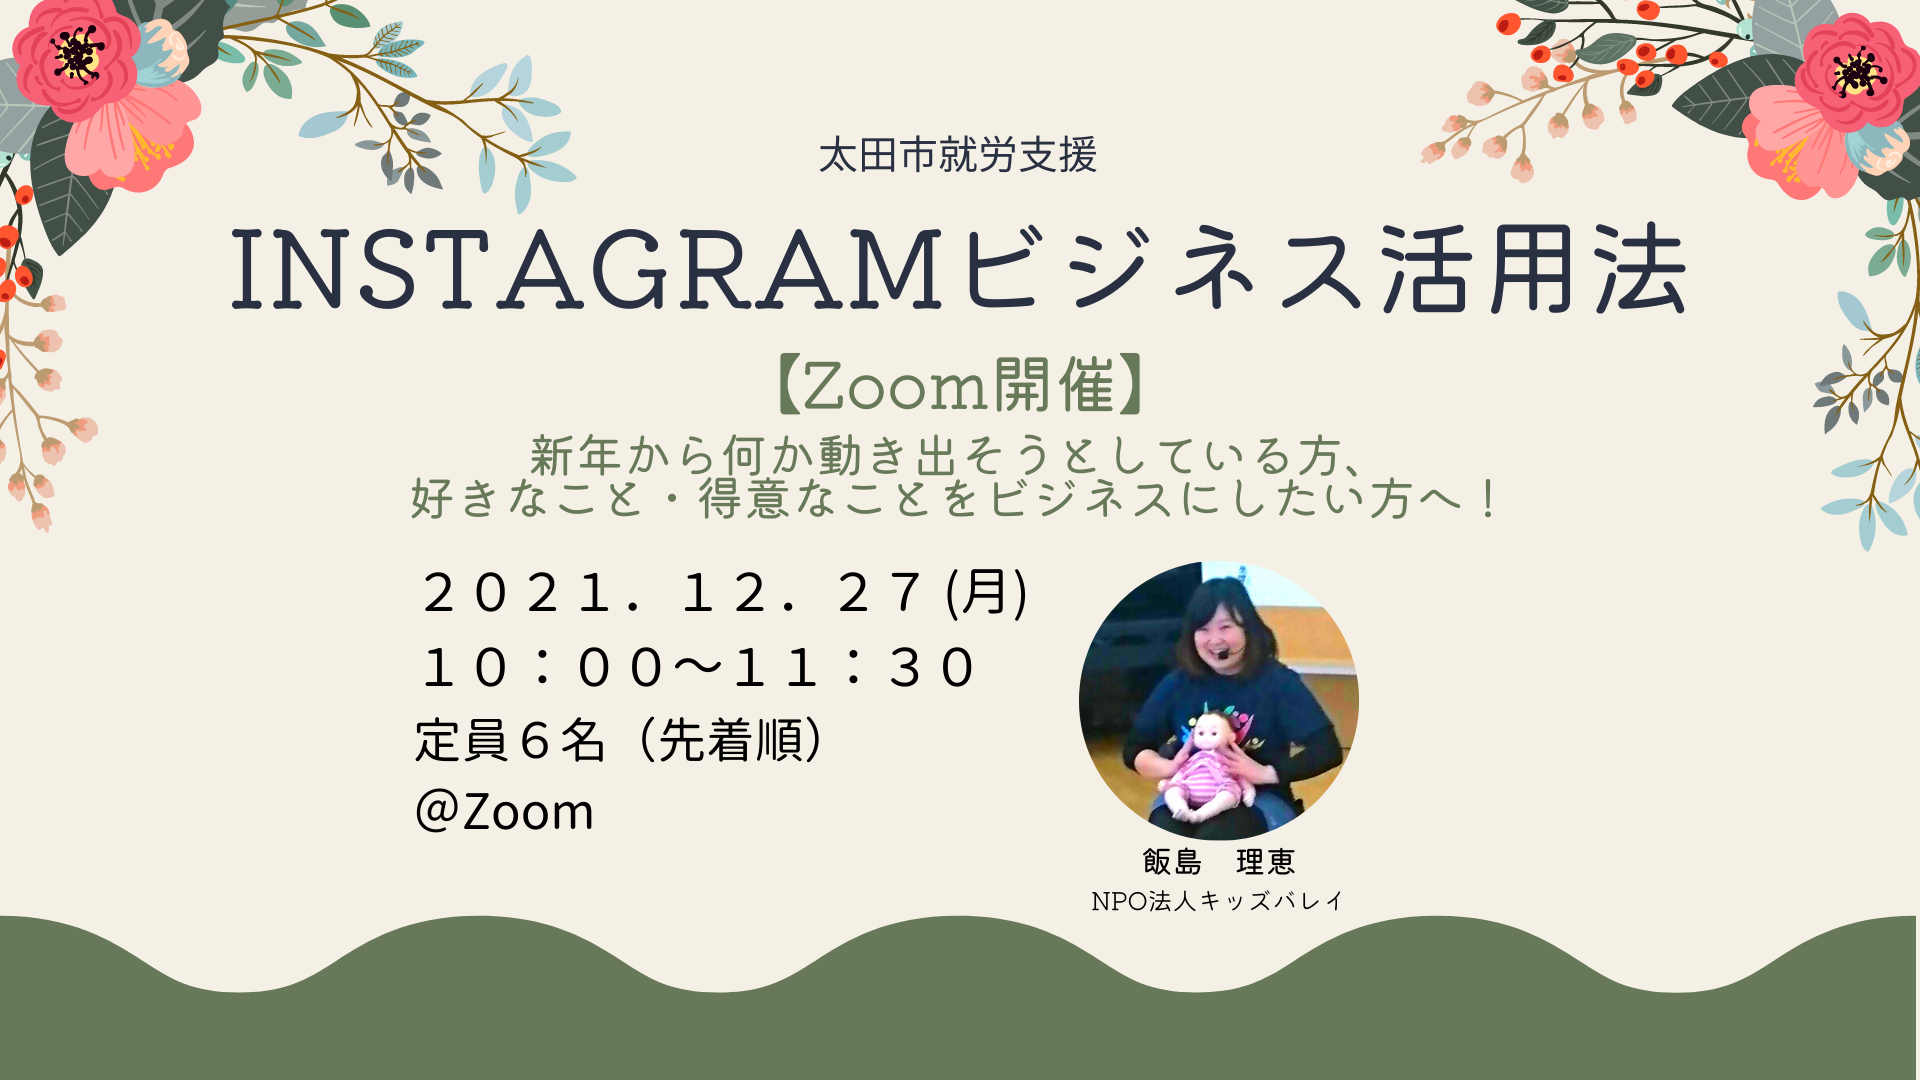 【太田市/就労支援事業】【Zoom開催】Instagramビジネス活用法